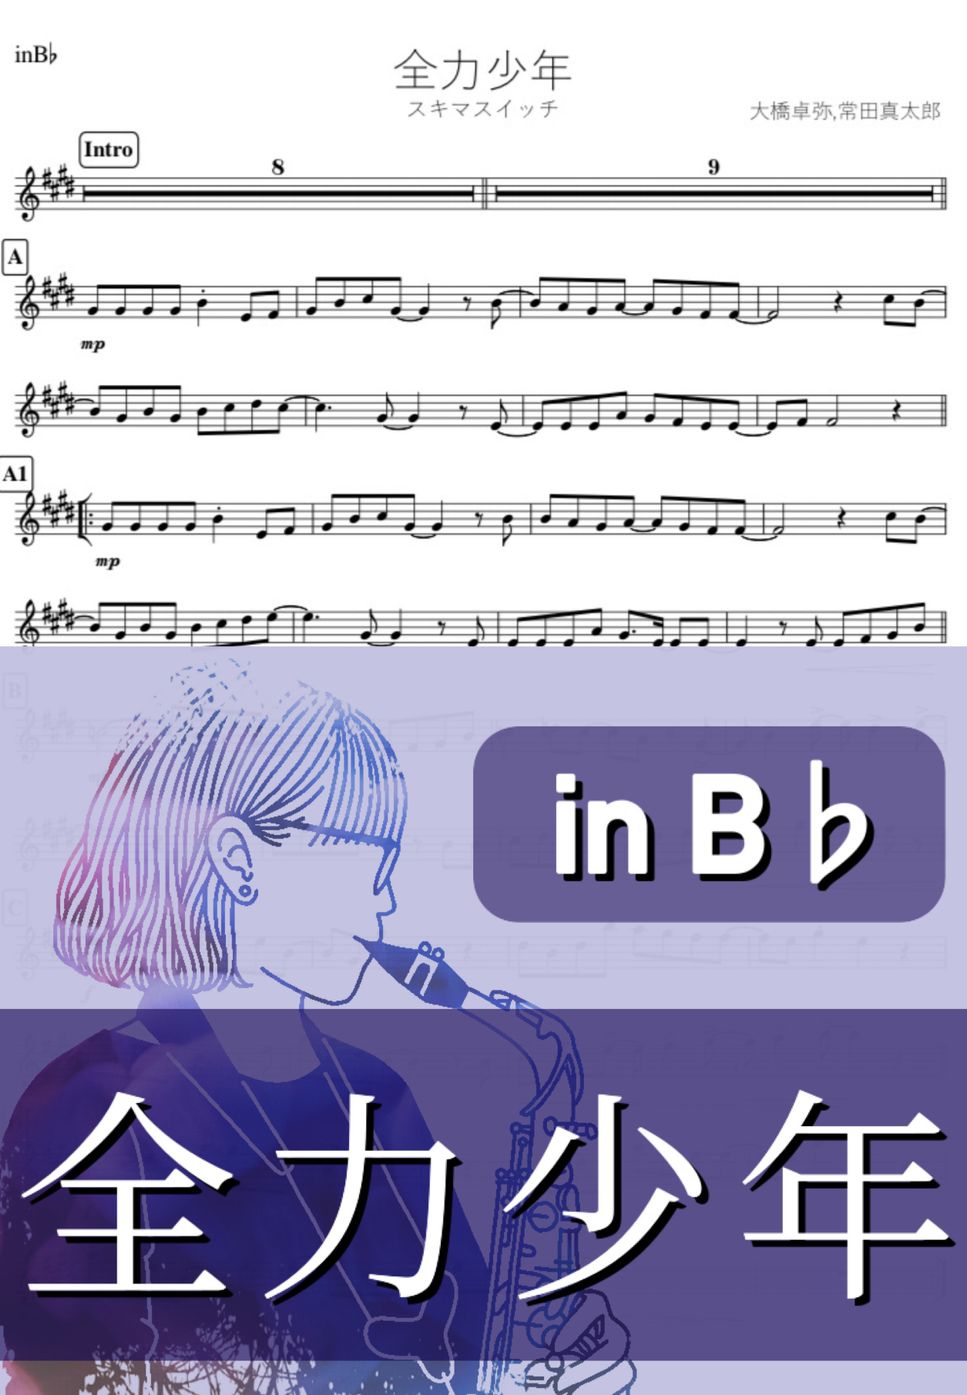 スキマスイッチ - 全力少年 (B♭) by kanamusic